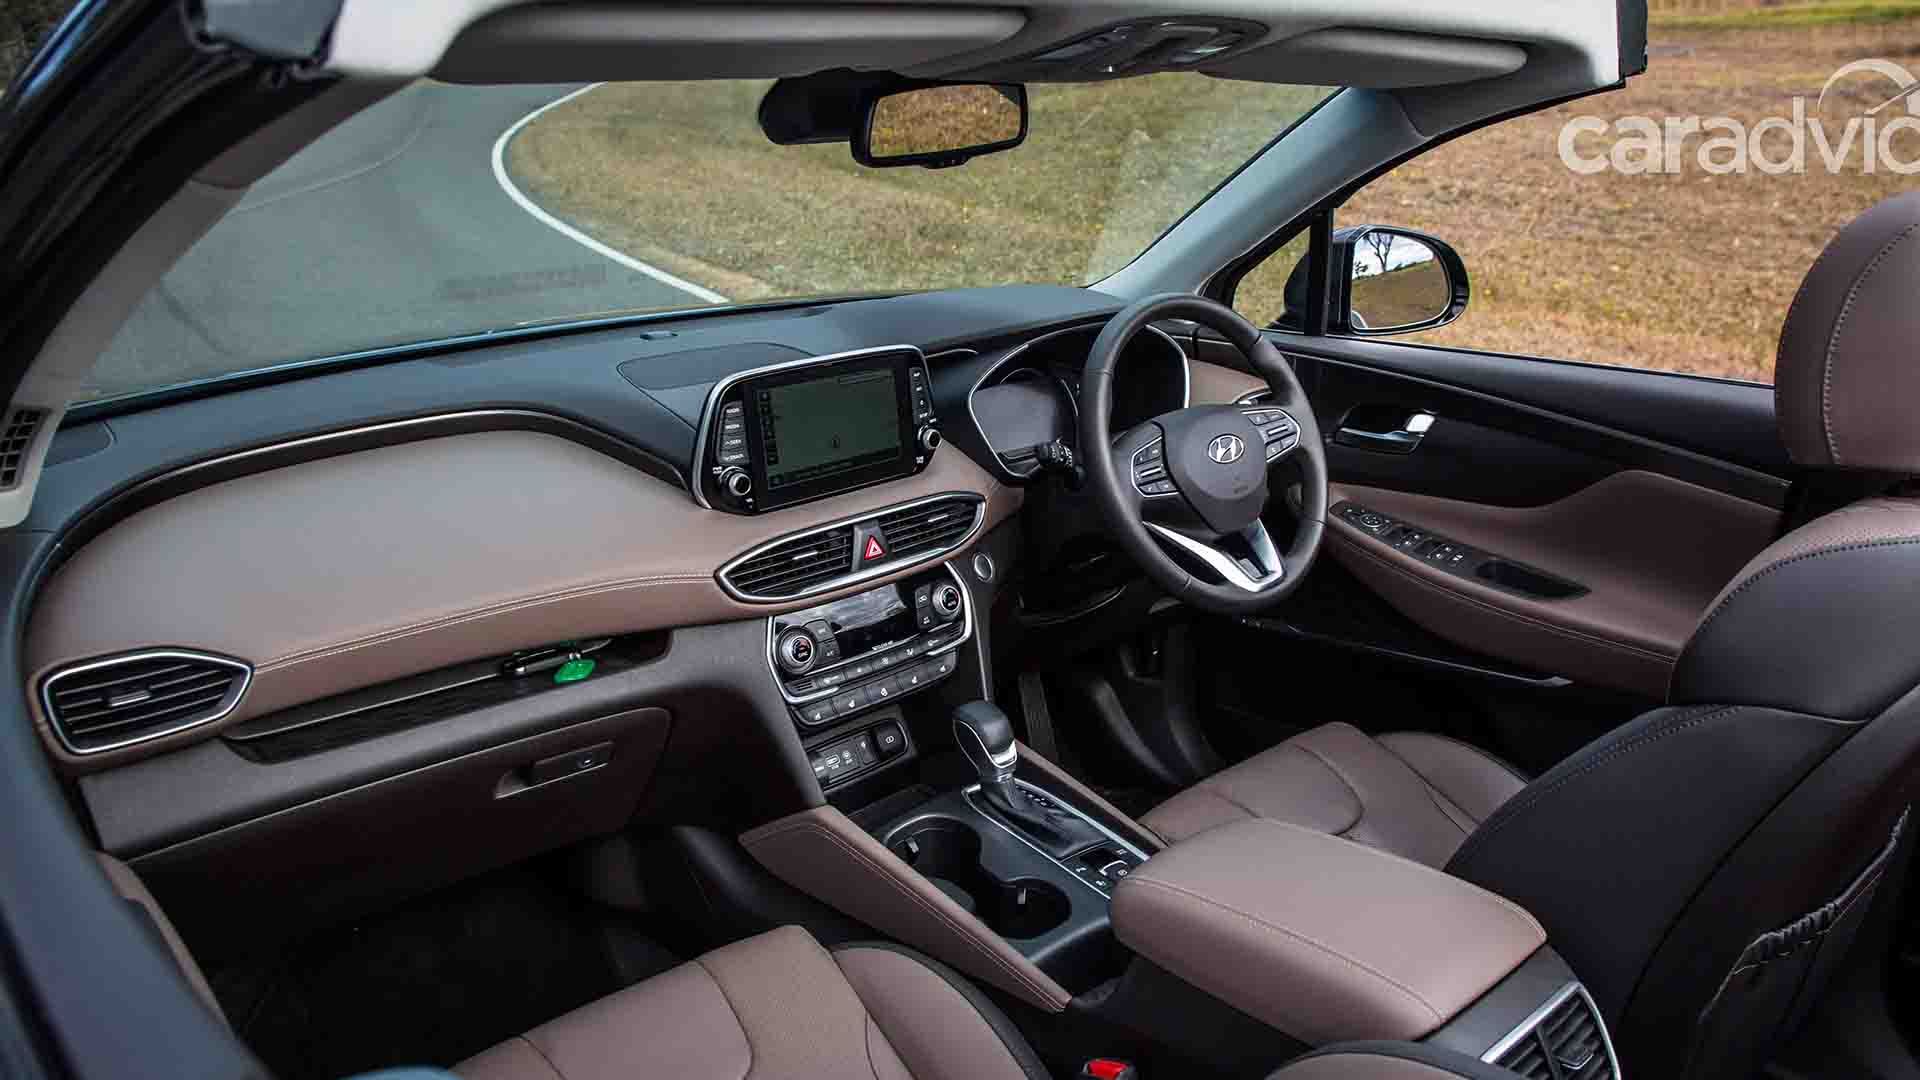 Berita, interior All New Hyundai Santa Fe Cabrio Australia: All New Hyundai Santa Fe Cabrio : Saat SUV Korea Tampil Topless!